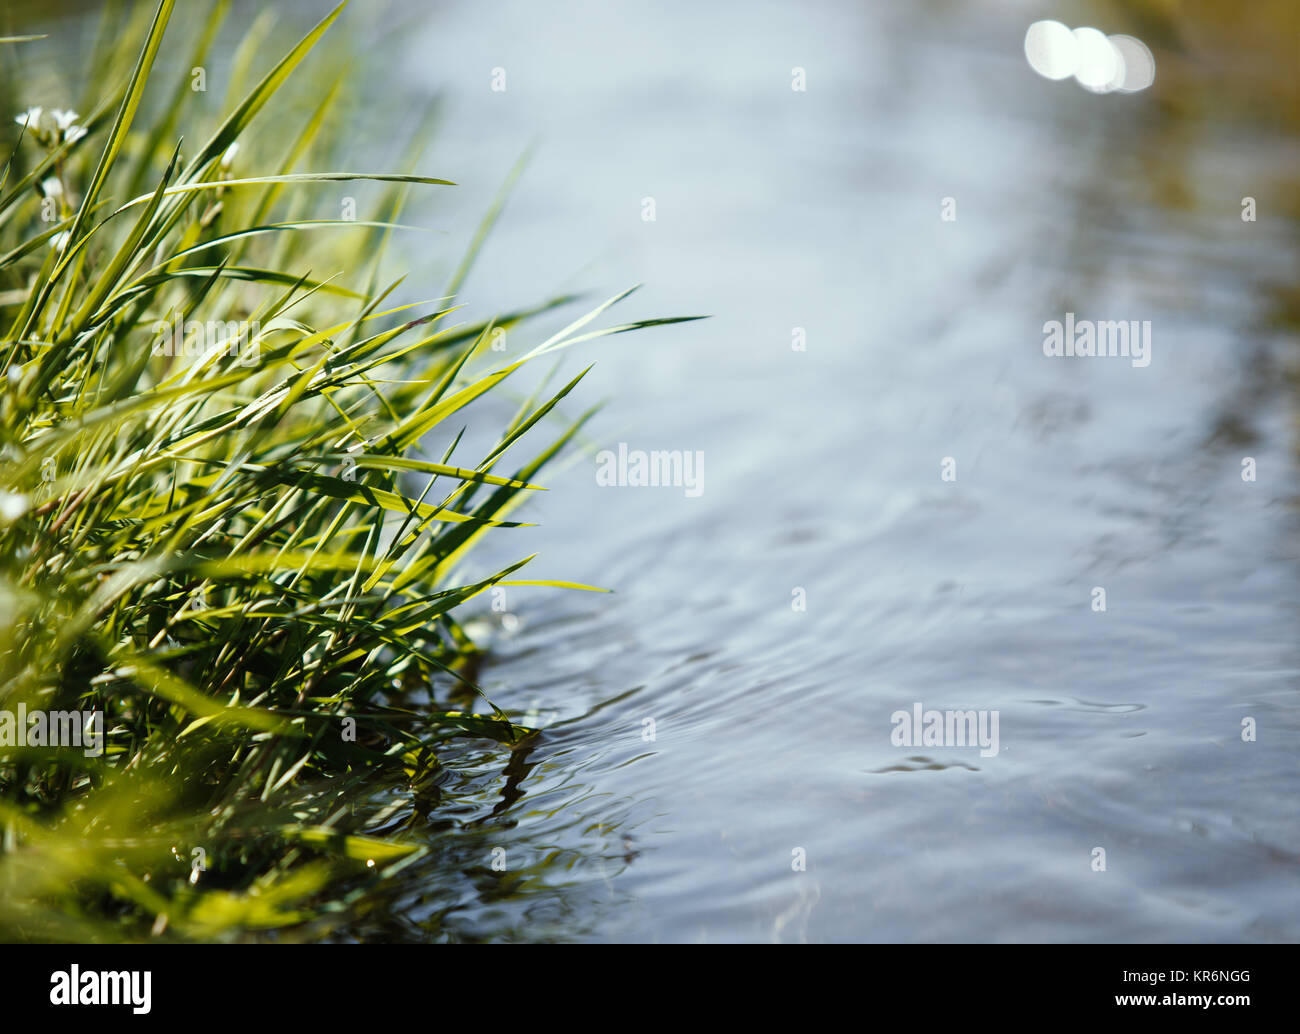 Chiusura del flusso di acqua con pianta fresca, concetto di primavera. Foto Stock